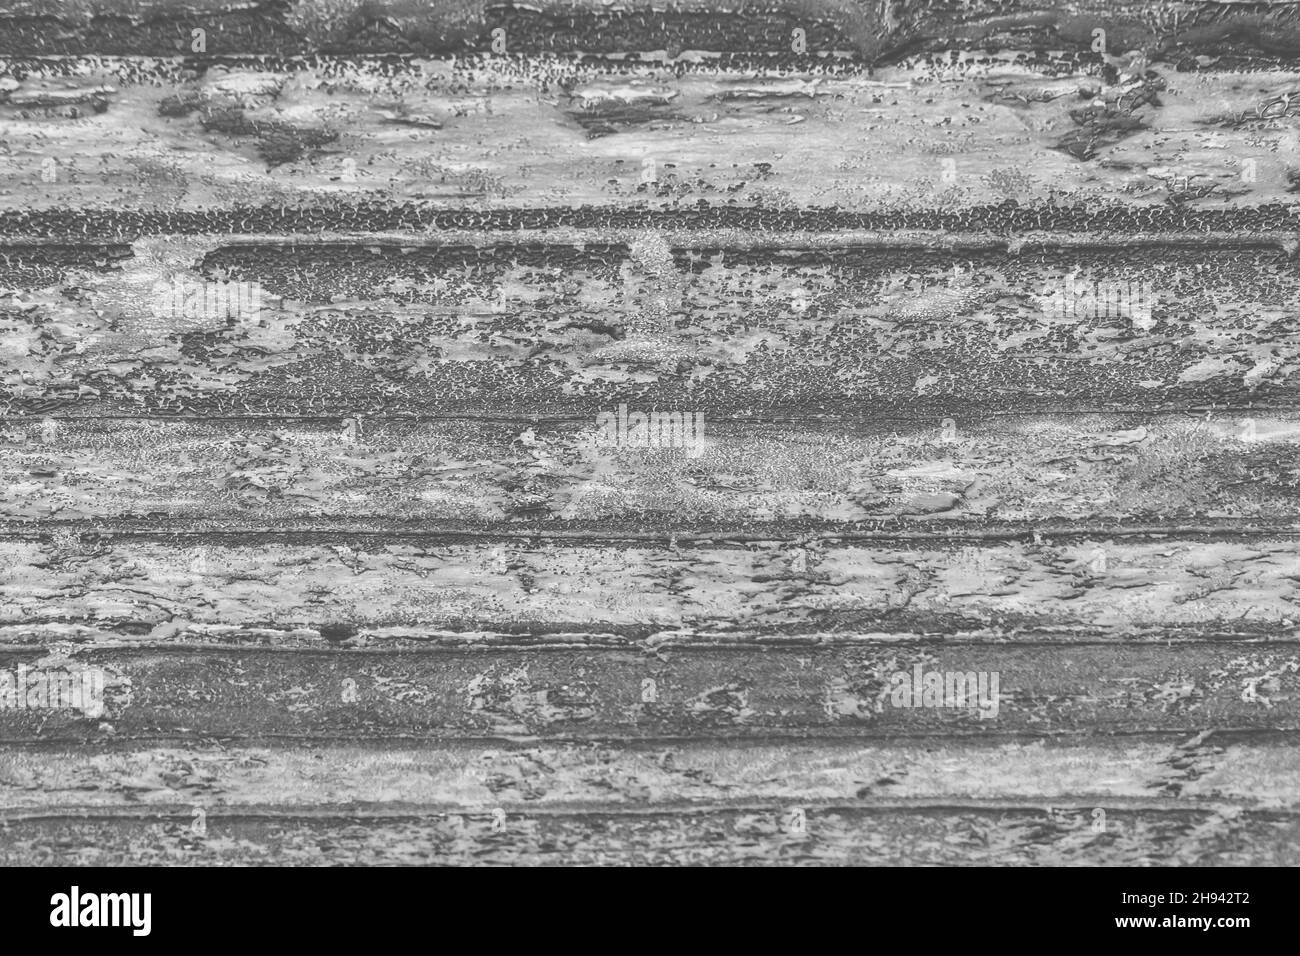 Vieux matériau de feutre de couverture sur le fond de texture de la surface de bitume de la couverture de toit. Banque D'Images